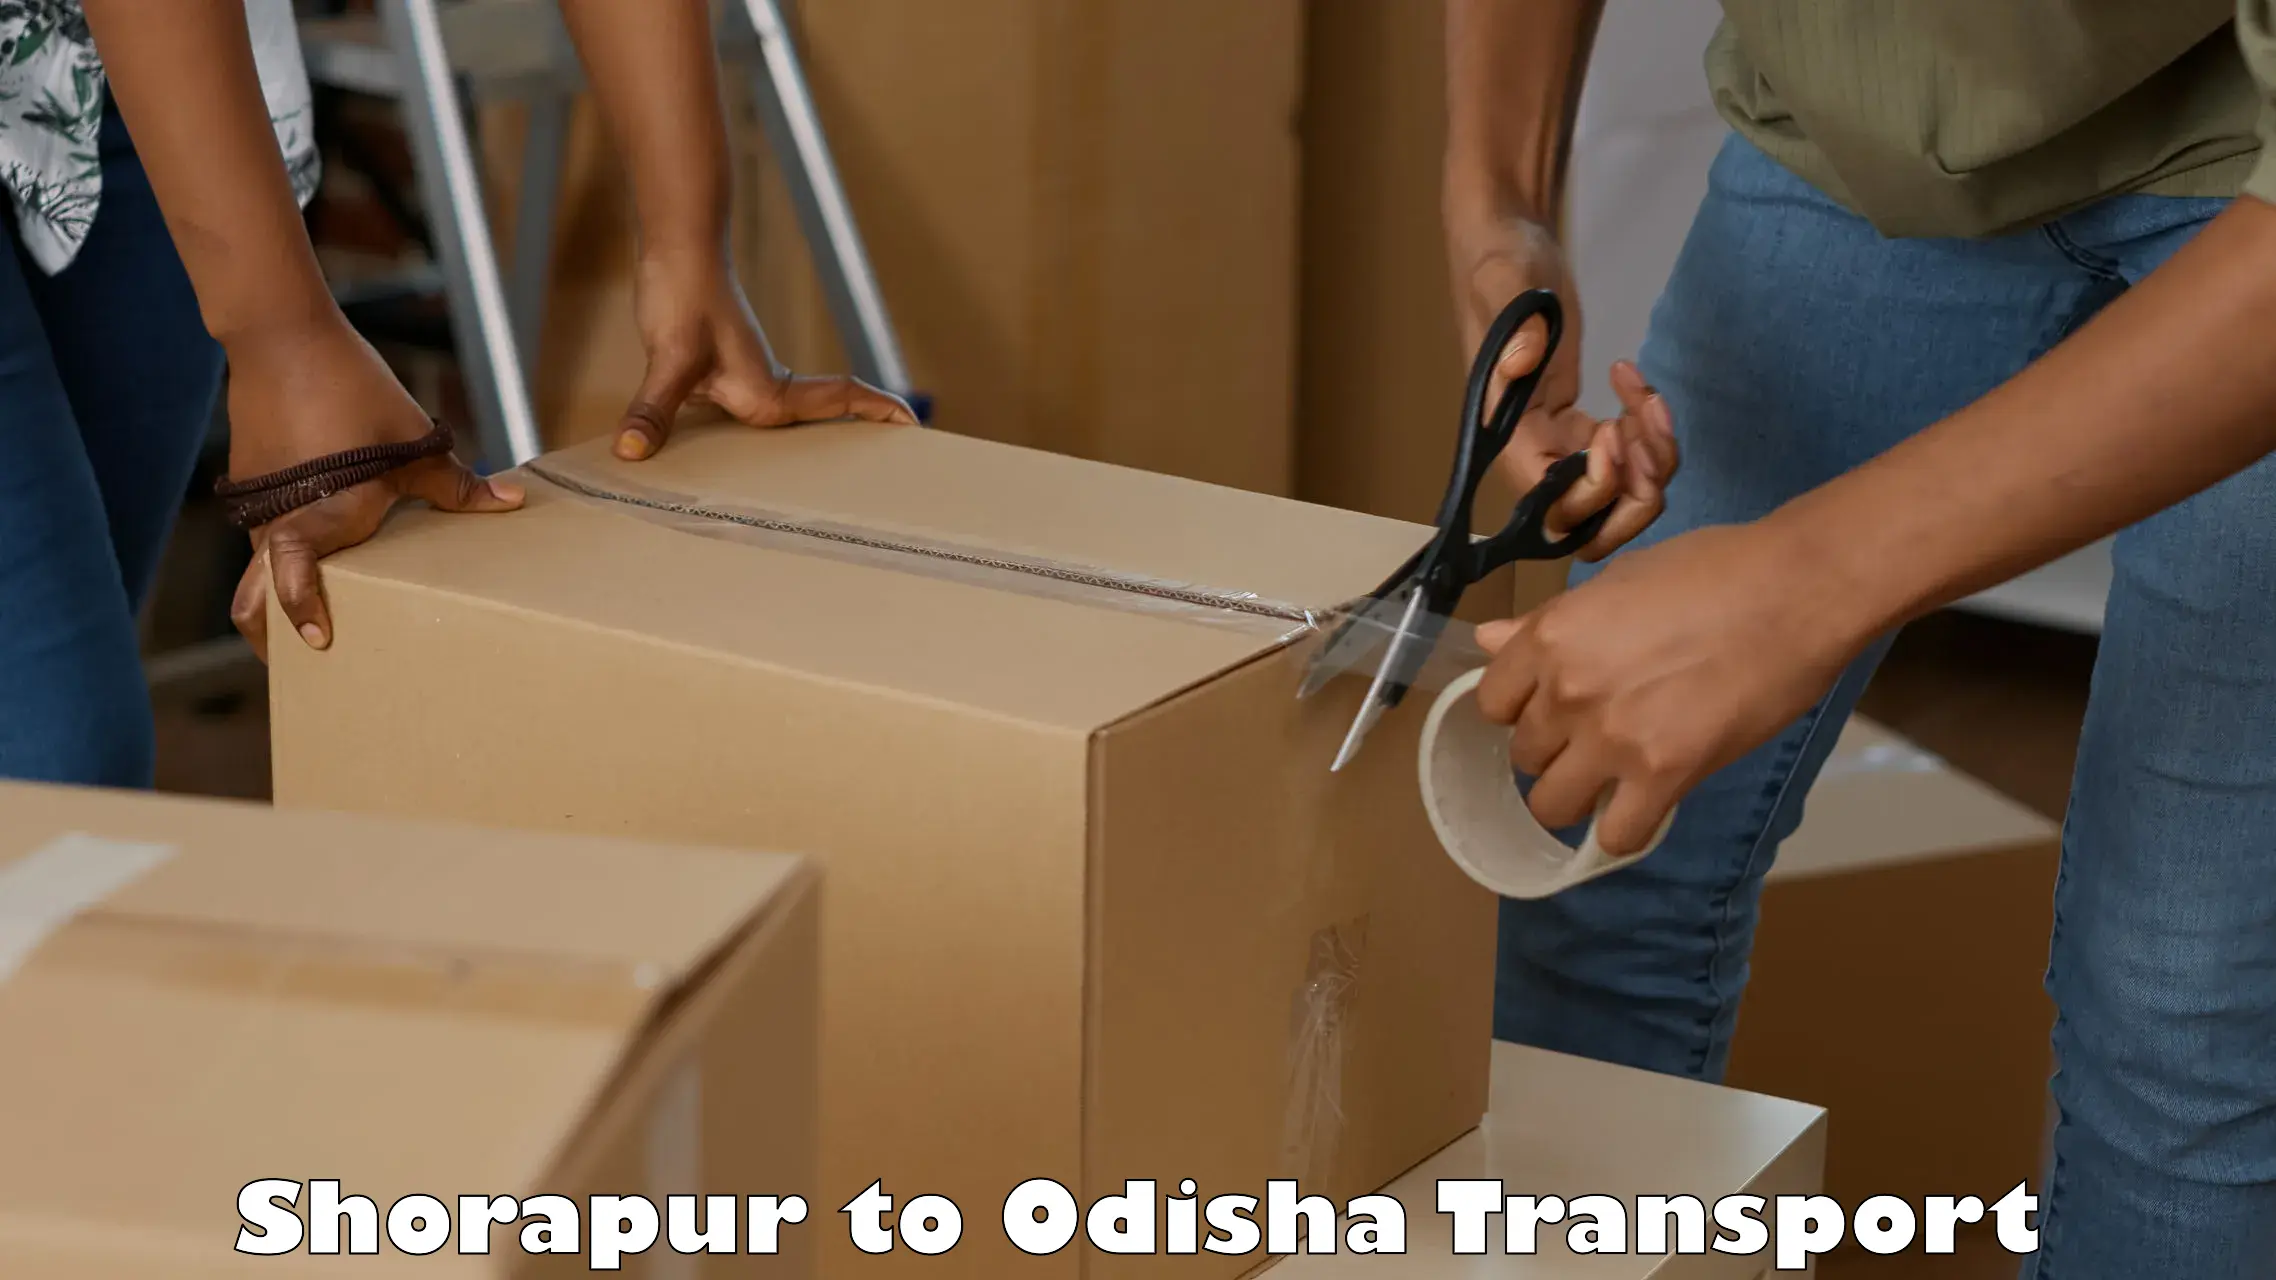 Cargo train transport services in Shorapur to Daspalla